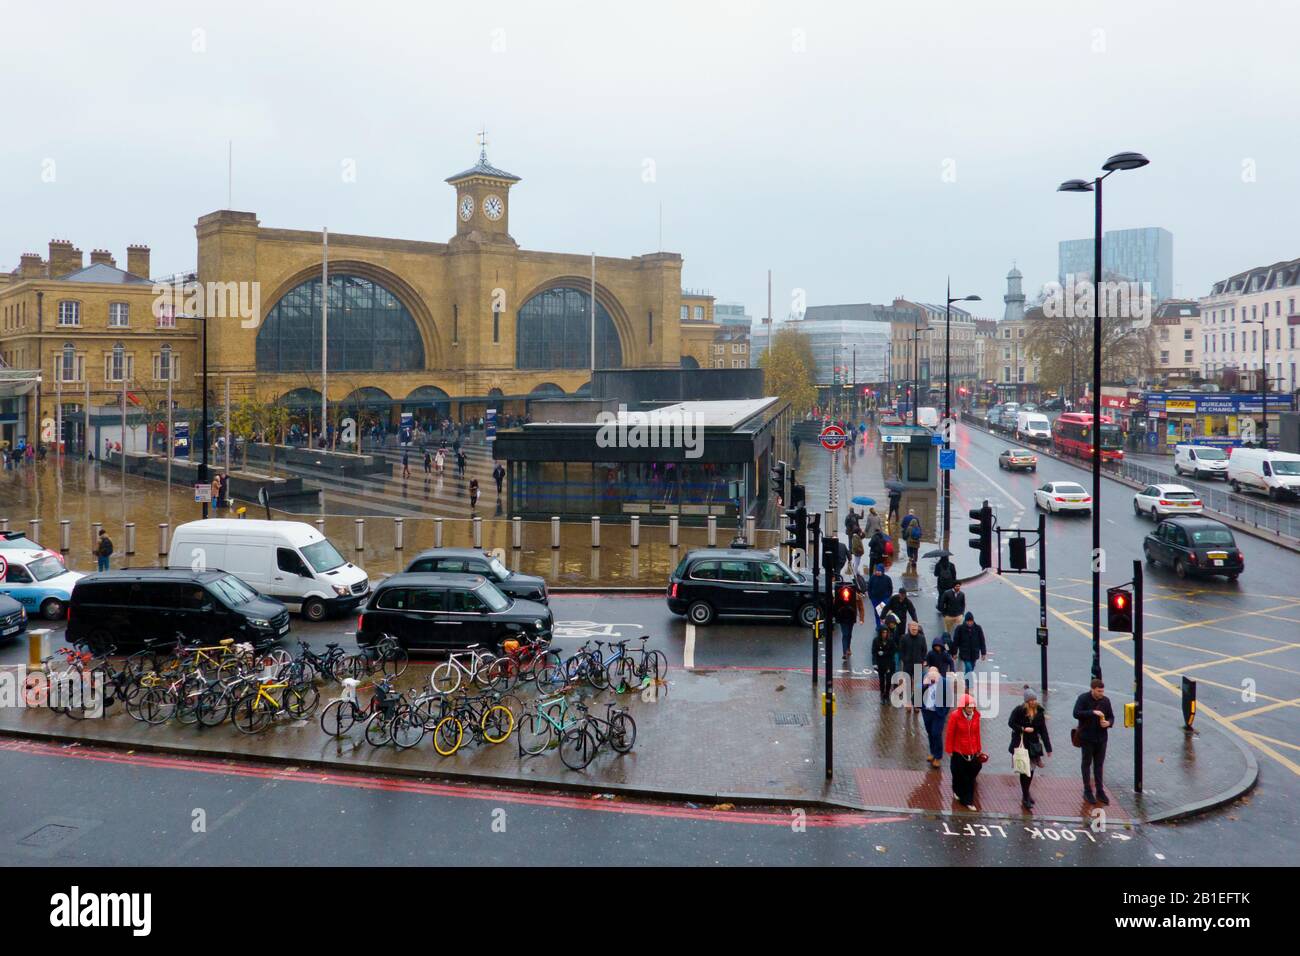 Kings Cross Station,Euston Road,Rainy Day.London,England Stock Photo